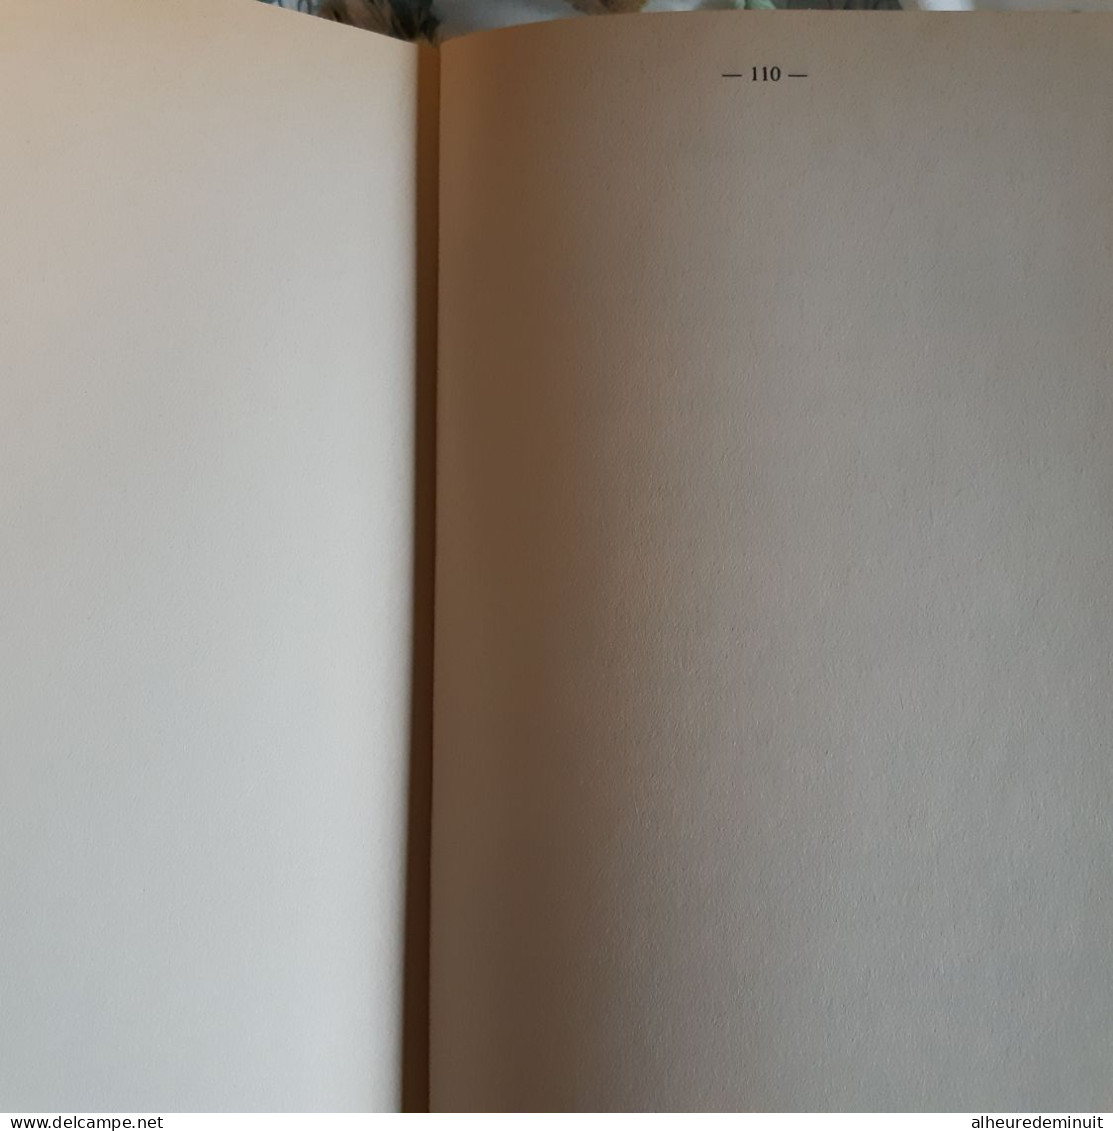 L'OEUVRE DU SOCIALISME 1981-1988"JAK HABAIBY"livre blanc"prix conseille la vérité n'a pas de prix"cadeau"emblème de la R